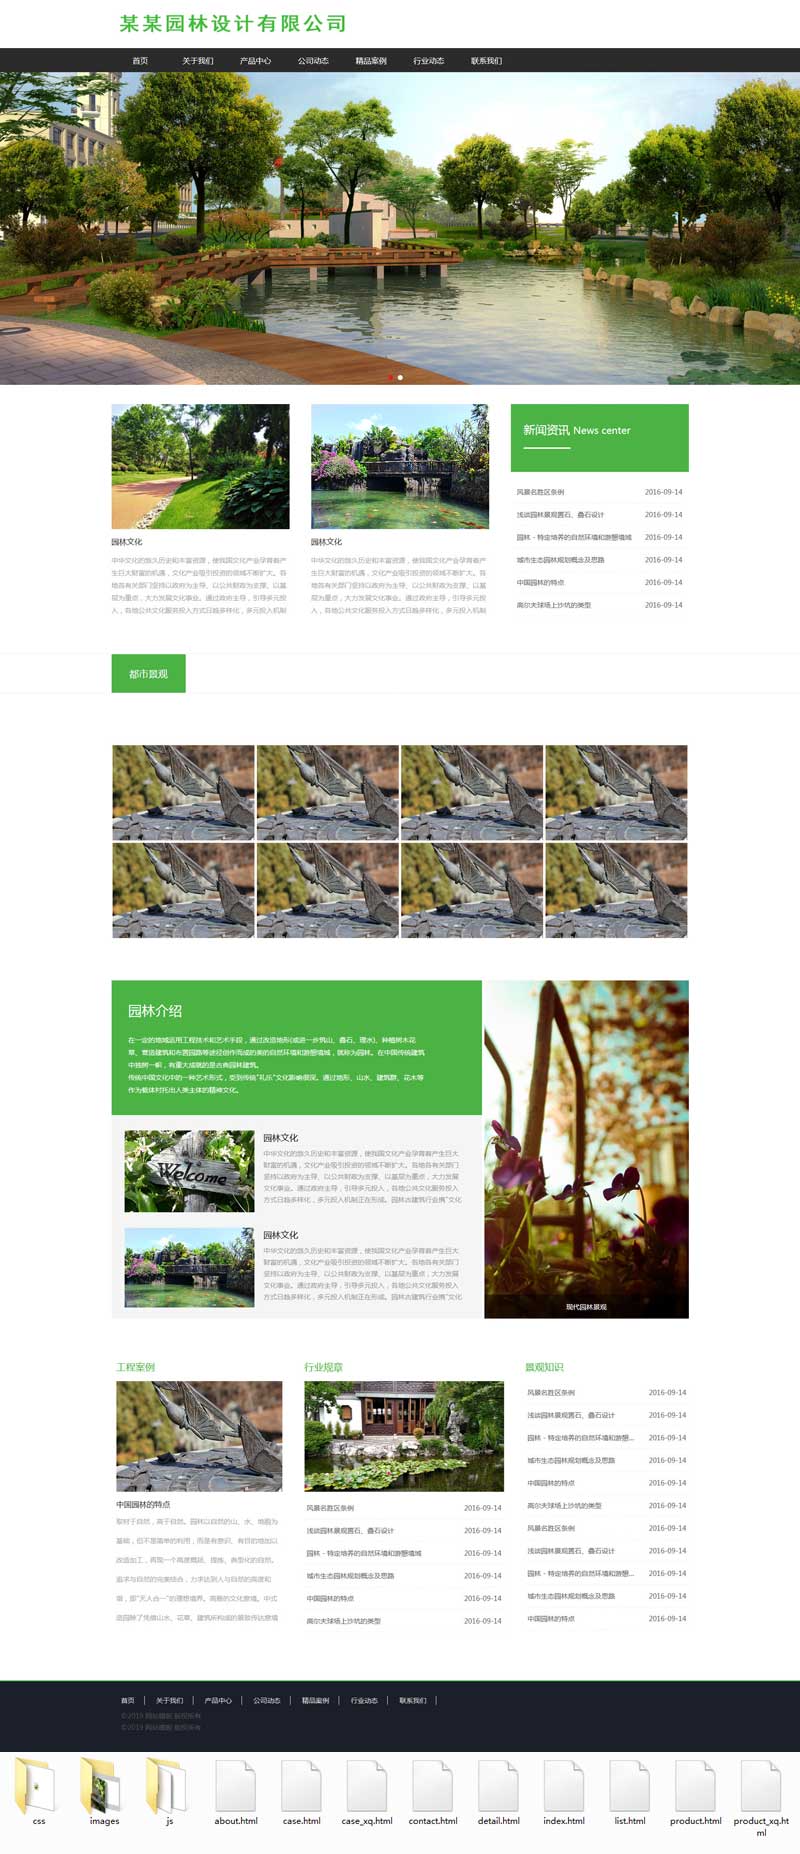 绿色的园林景观设计公司网站模板